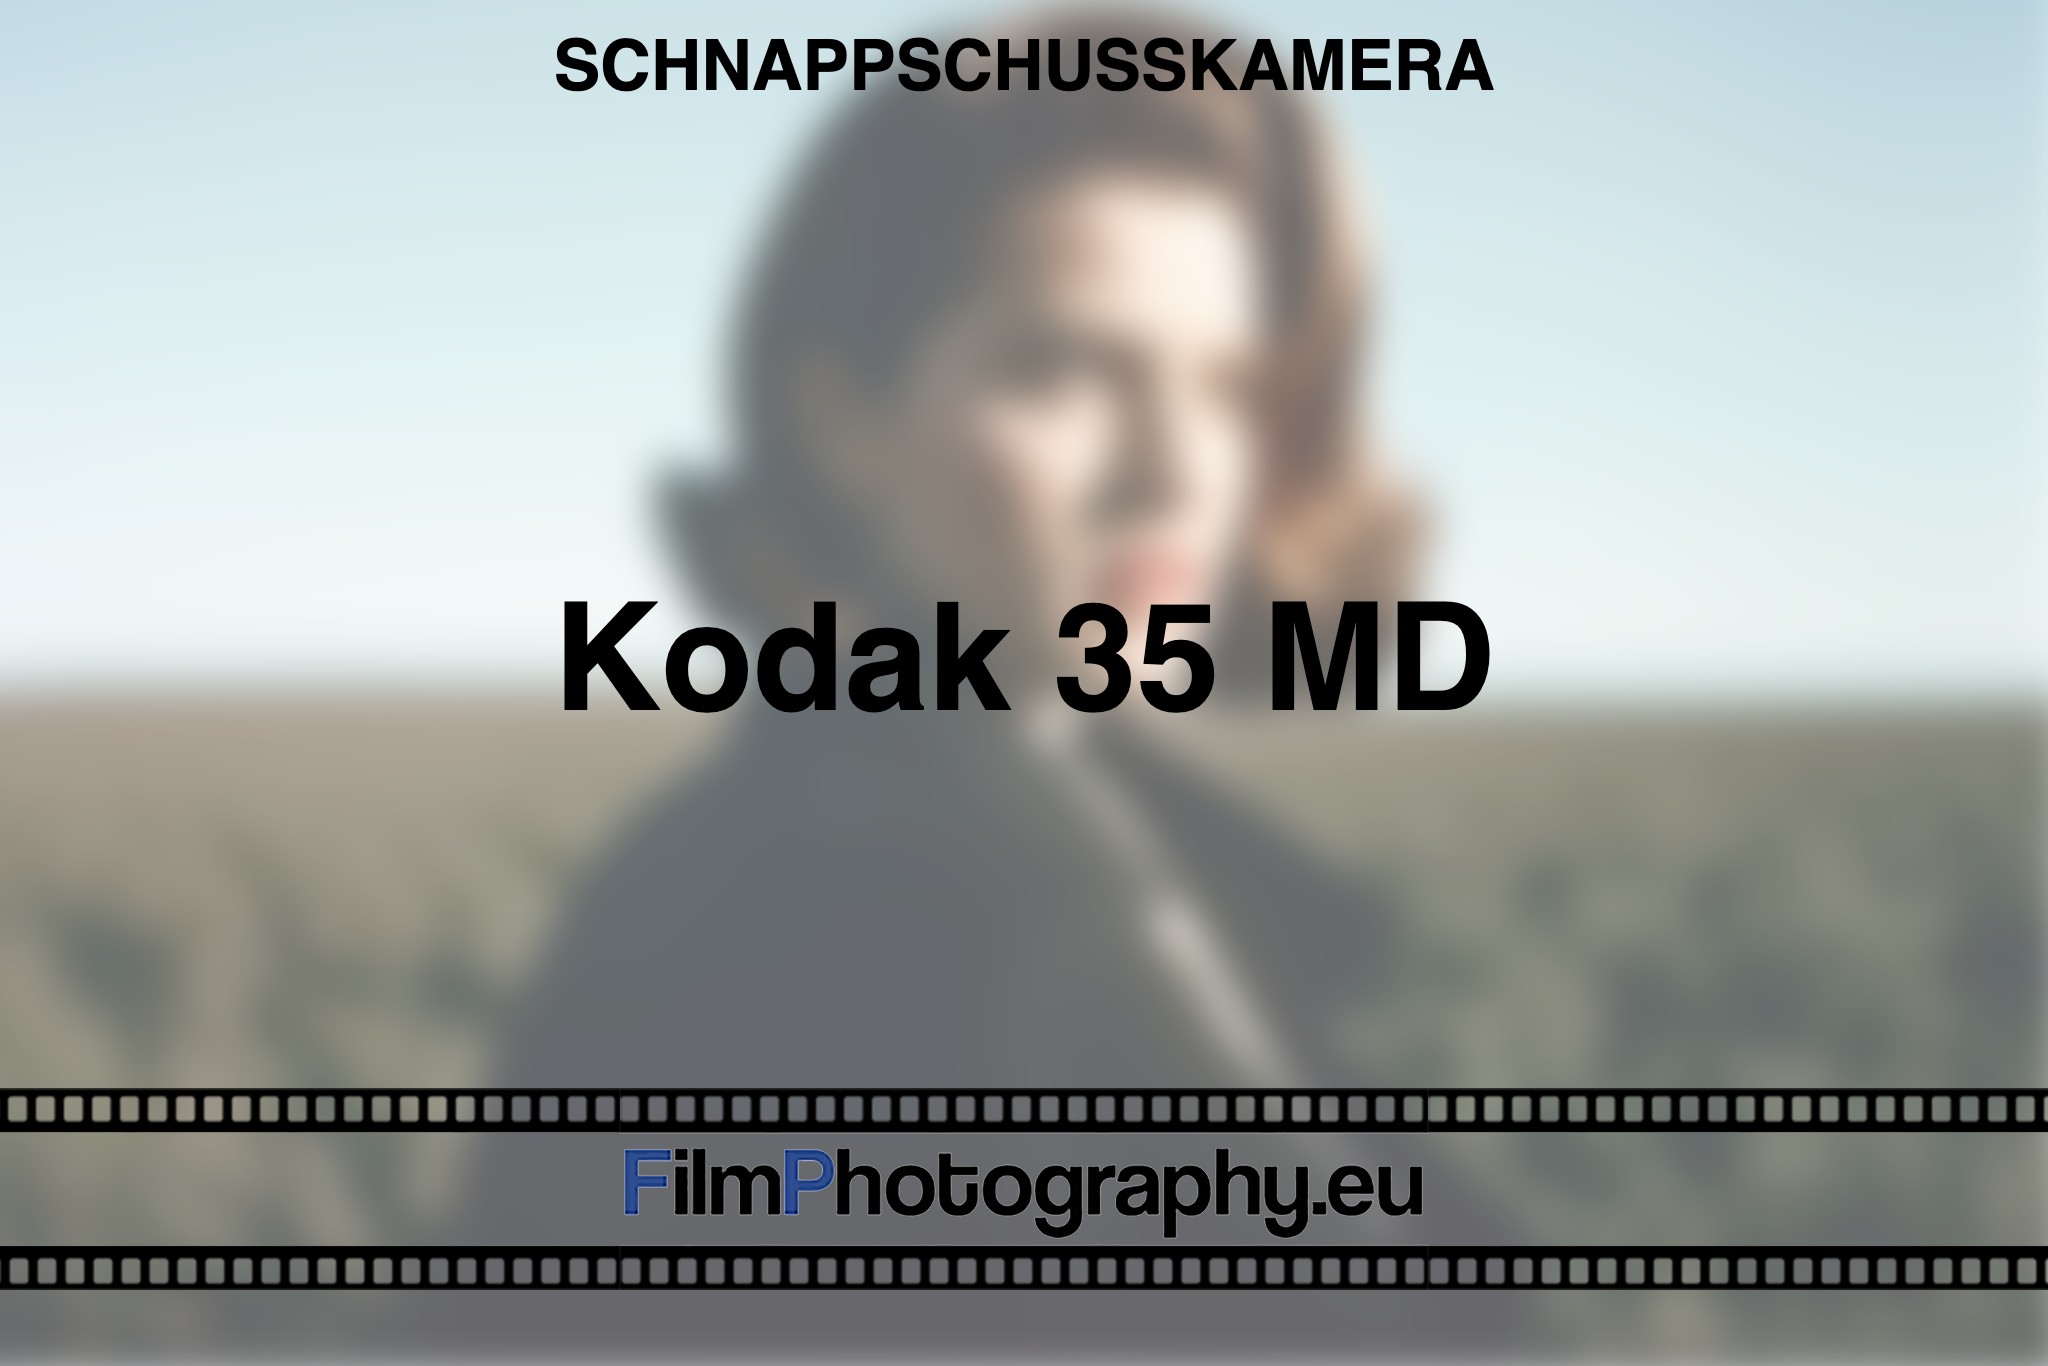 kodak-35-md-schnappschusskamera-bnv